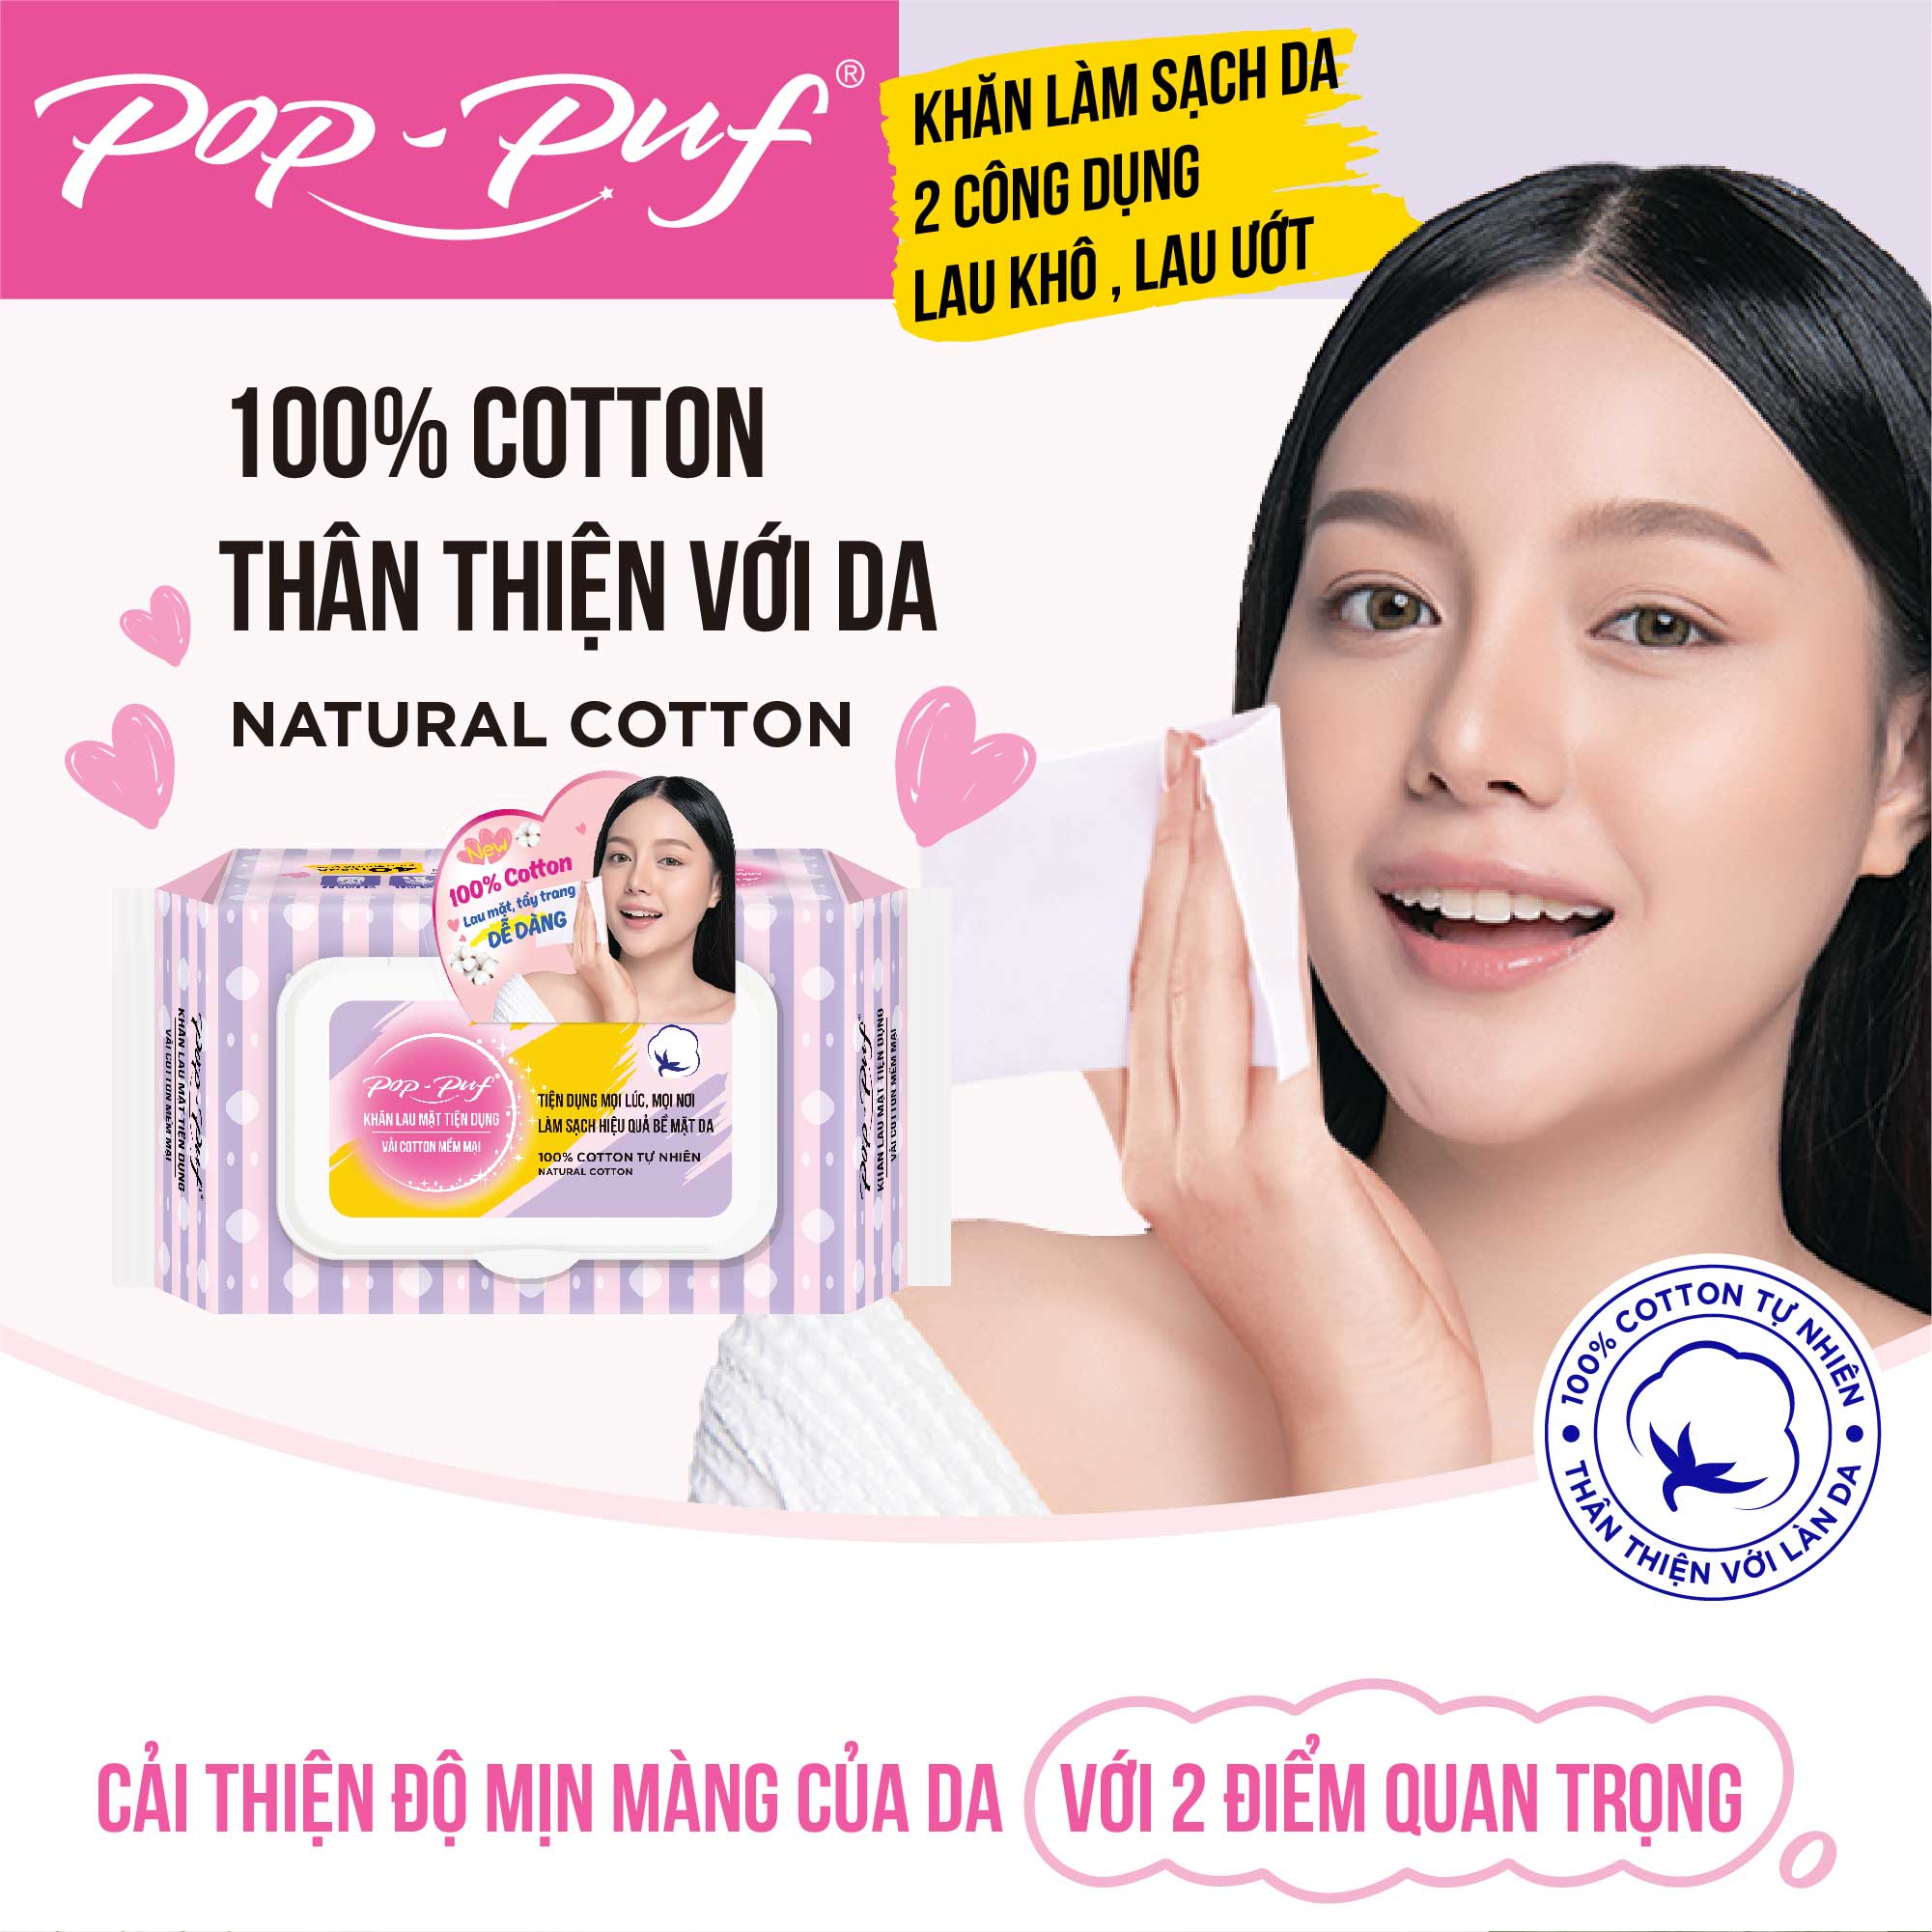 {SẢN PHẨM MỚI} Khăn Lau Mặt Tiện Dụng Pop-Puf Vải 100% Cotton 40 Miếng/Bao